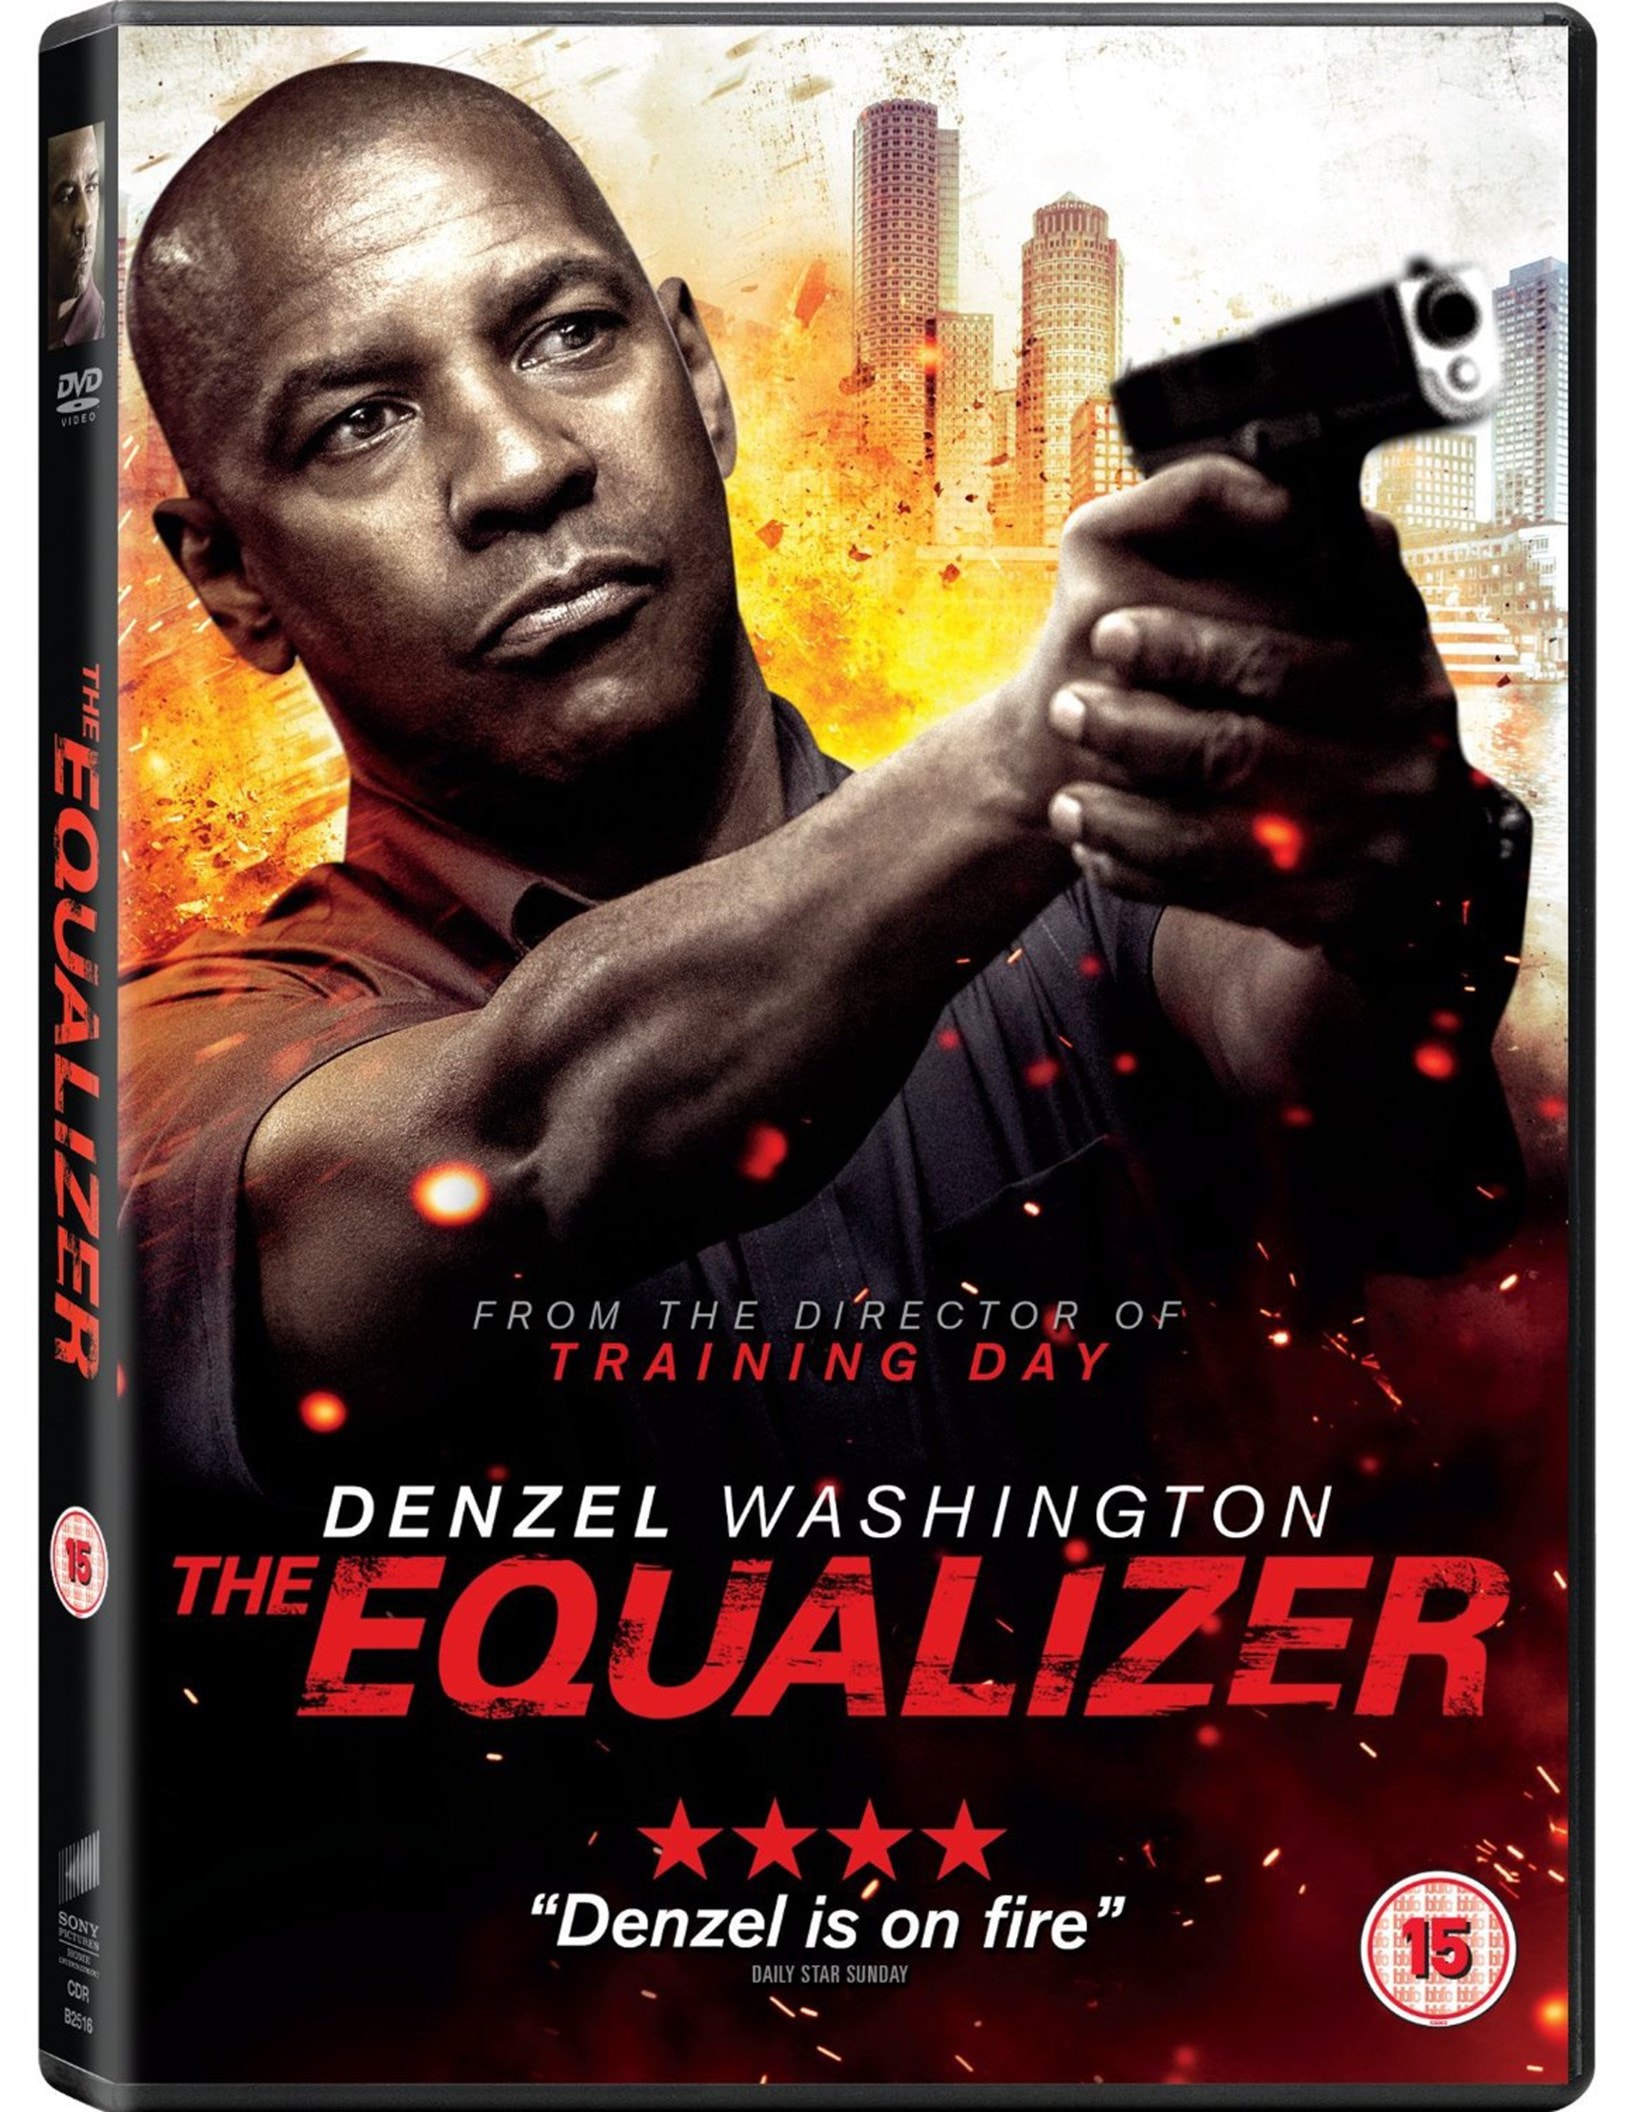 Denzel Washington leads the brutal new trailer for The Equalizer 2